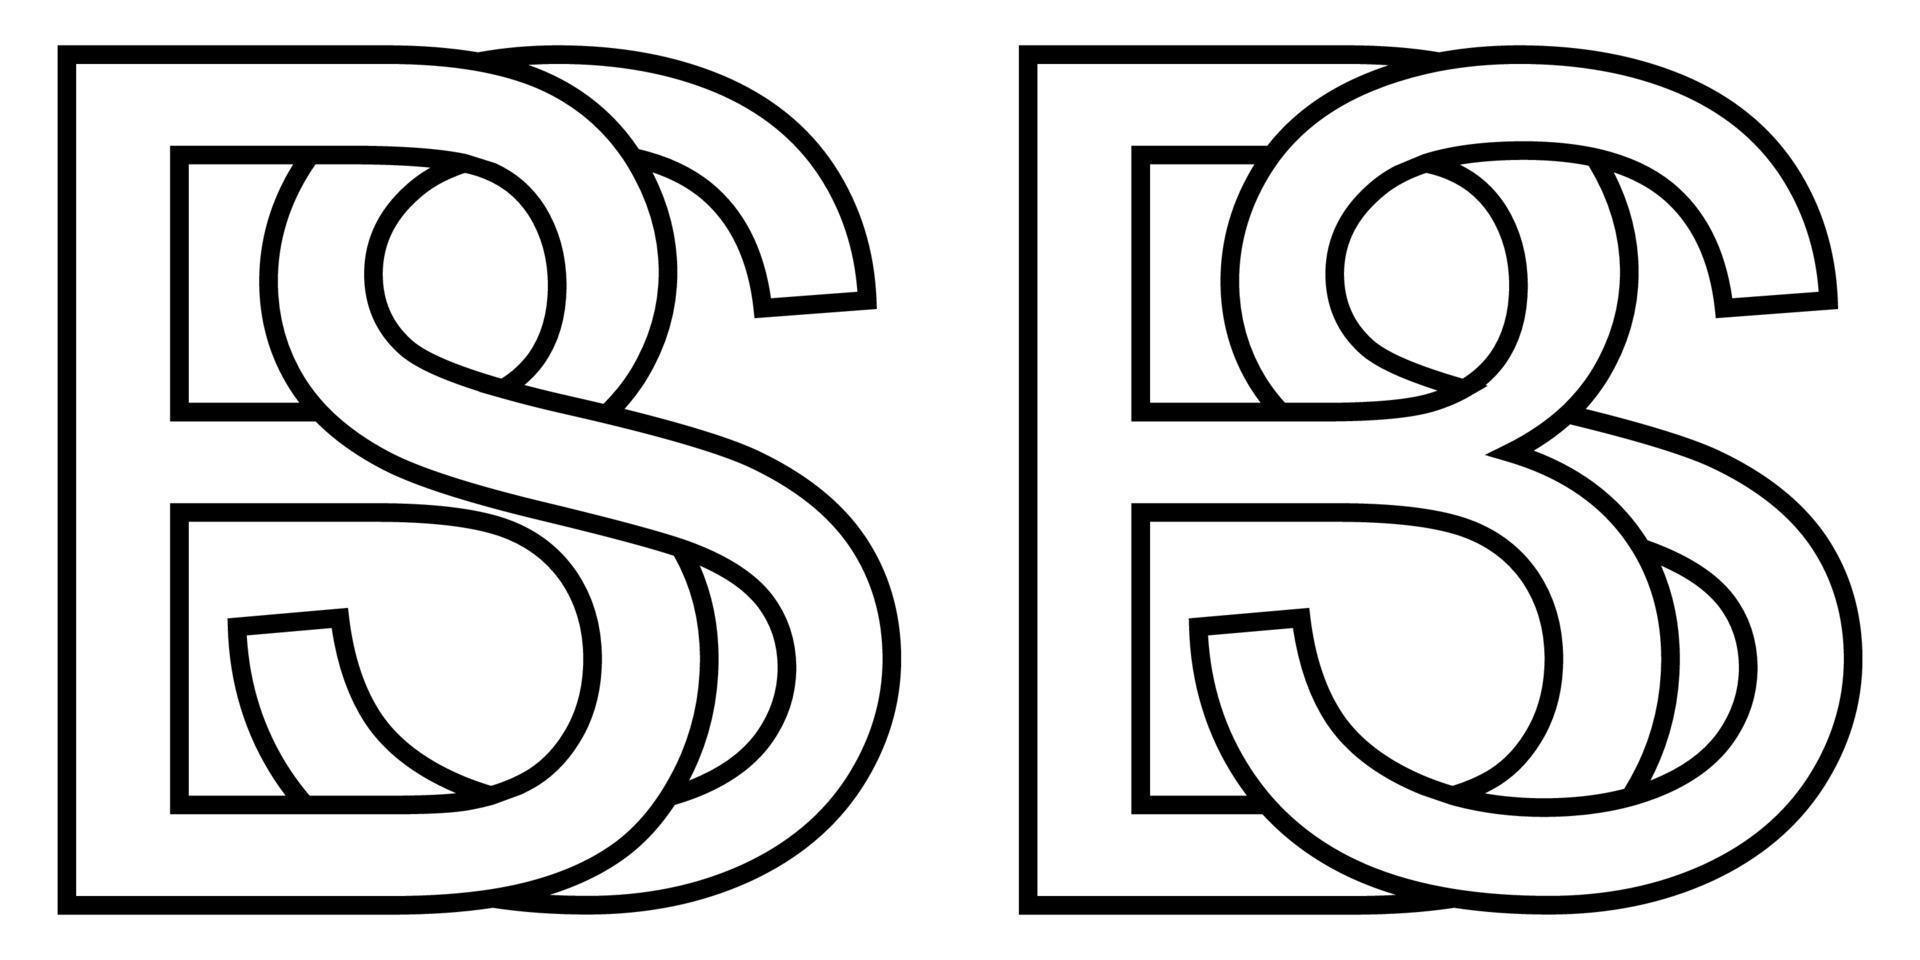 logo firmar bs sb icono firmar dos entrelazado letras b, s vector logo bs, sb primero capital letras modelo alfabeto b, s